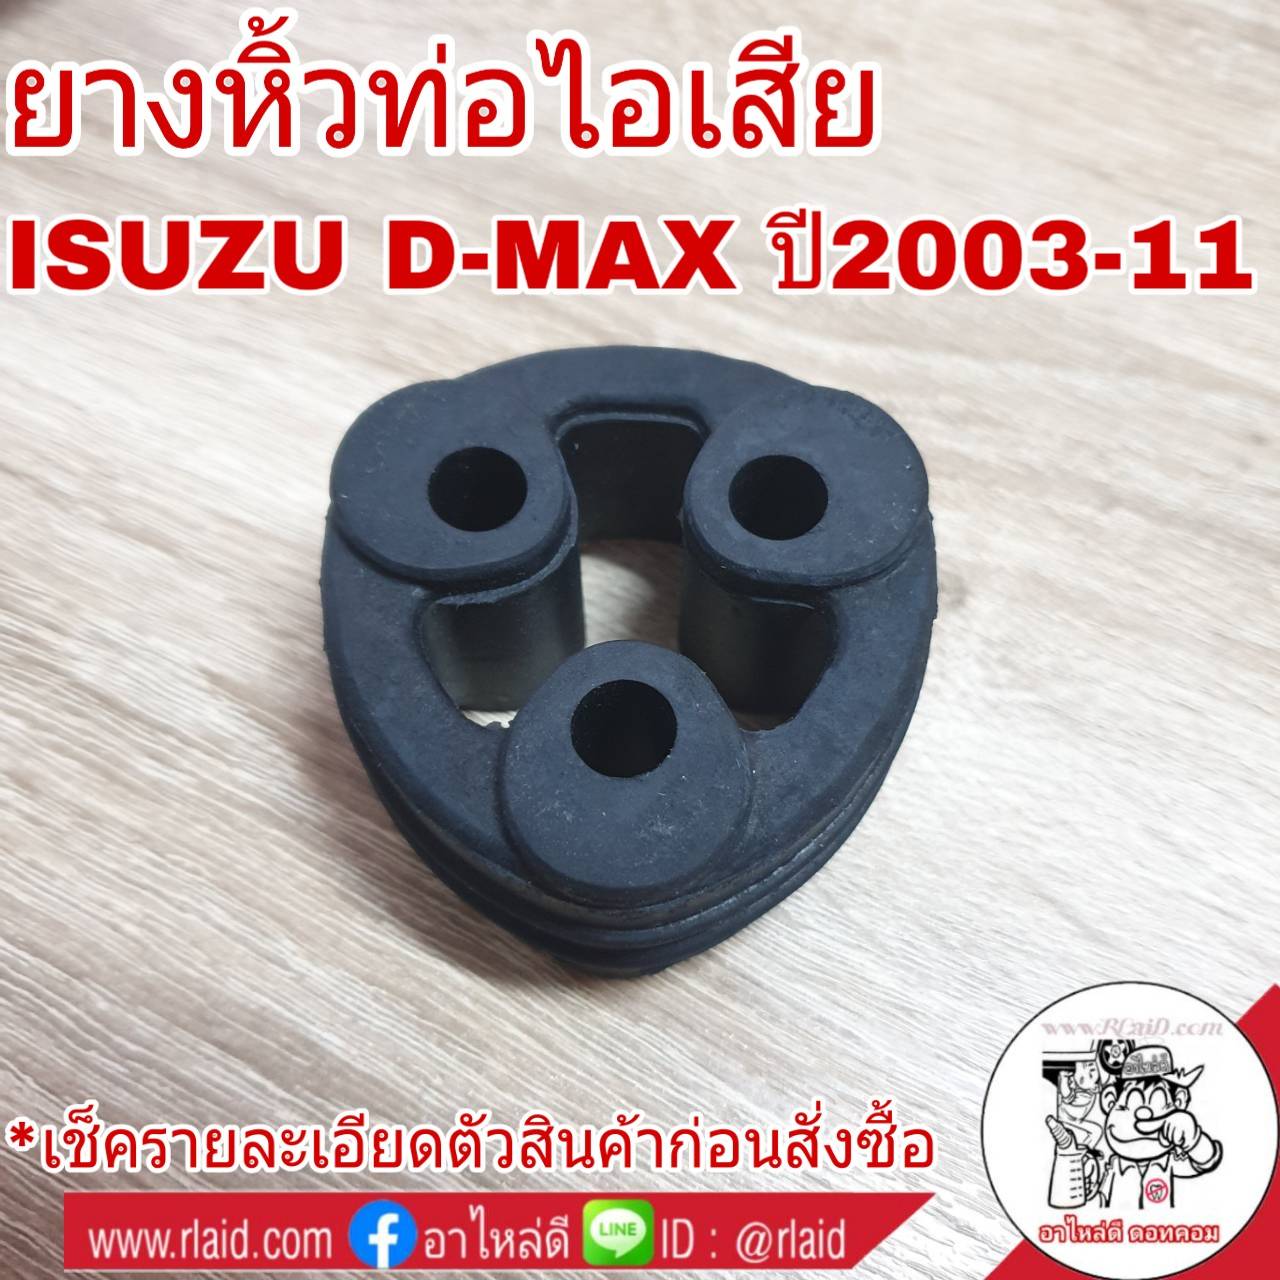 ยางหิ้วท่อ ไอเสีย ISUZU D-MAX อีซูซุ ดีแม็ก ปี2003-11 ( จำนวน 1ขิ้น )